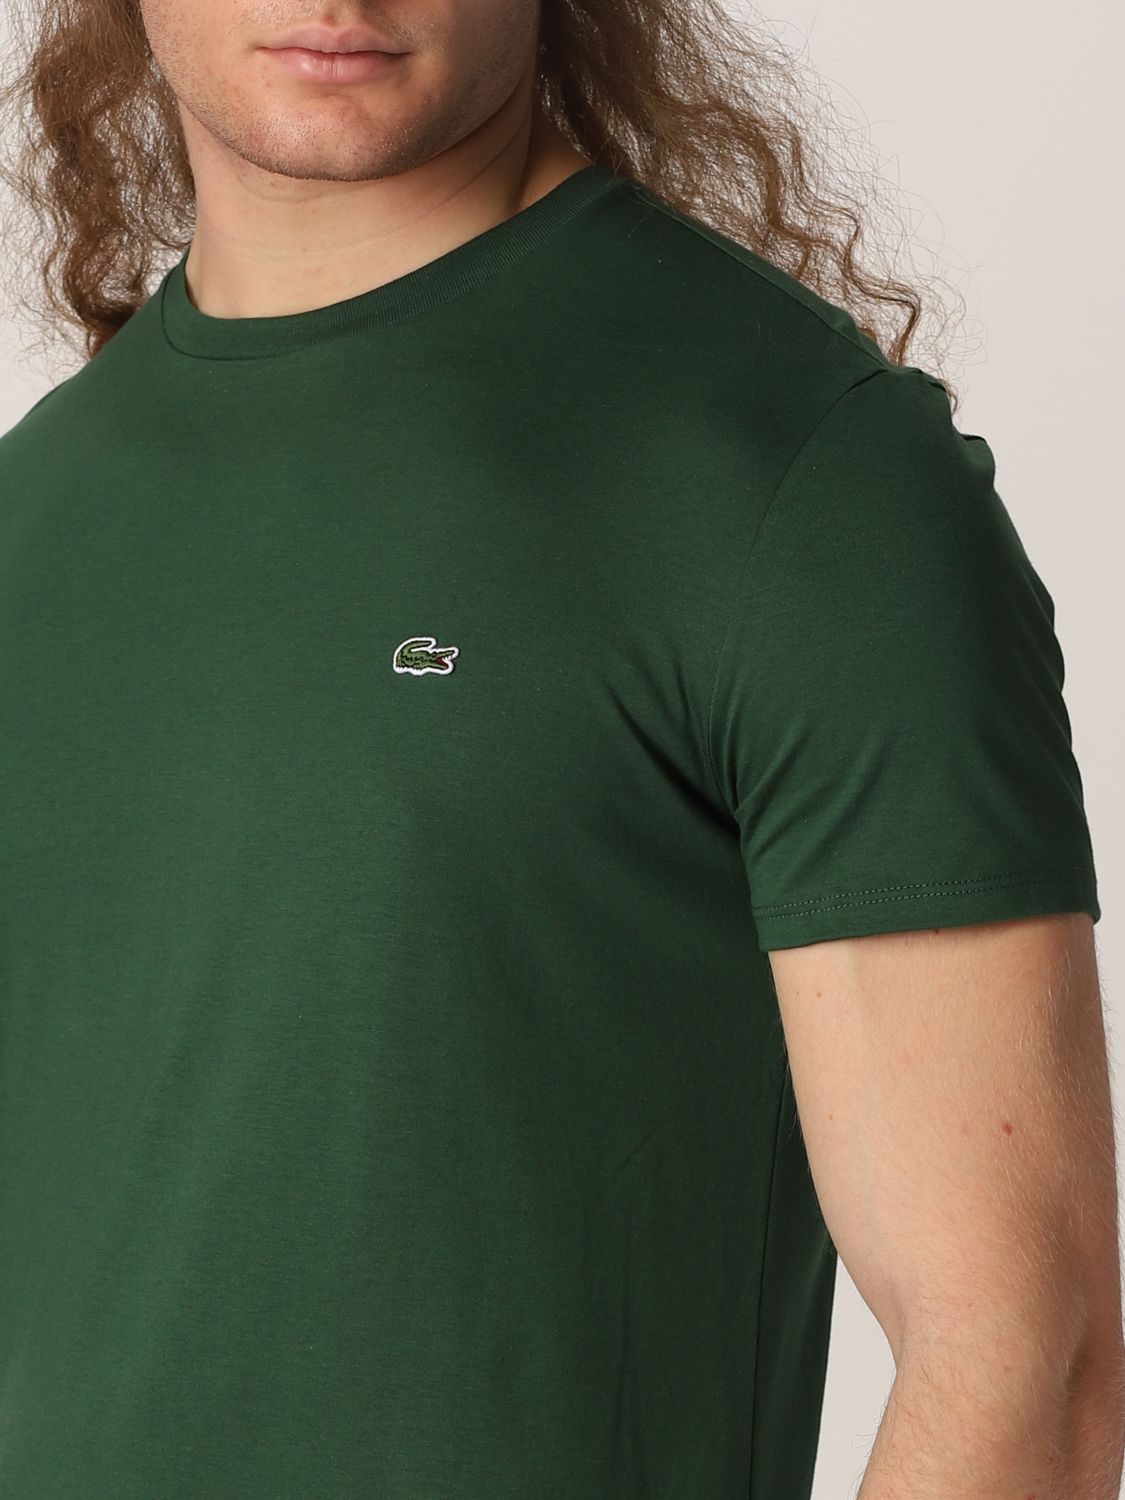 mental Præstation længde Lacoste Outlet: t-shirt for man - Green | Lacoste t-shirt TH6709 online on  GIGLIO.COM